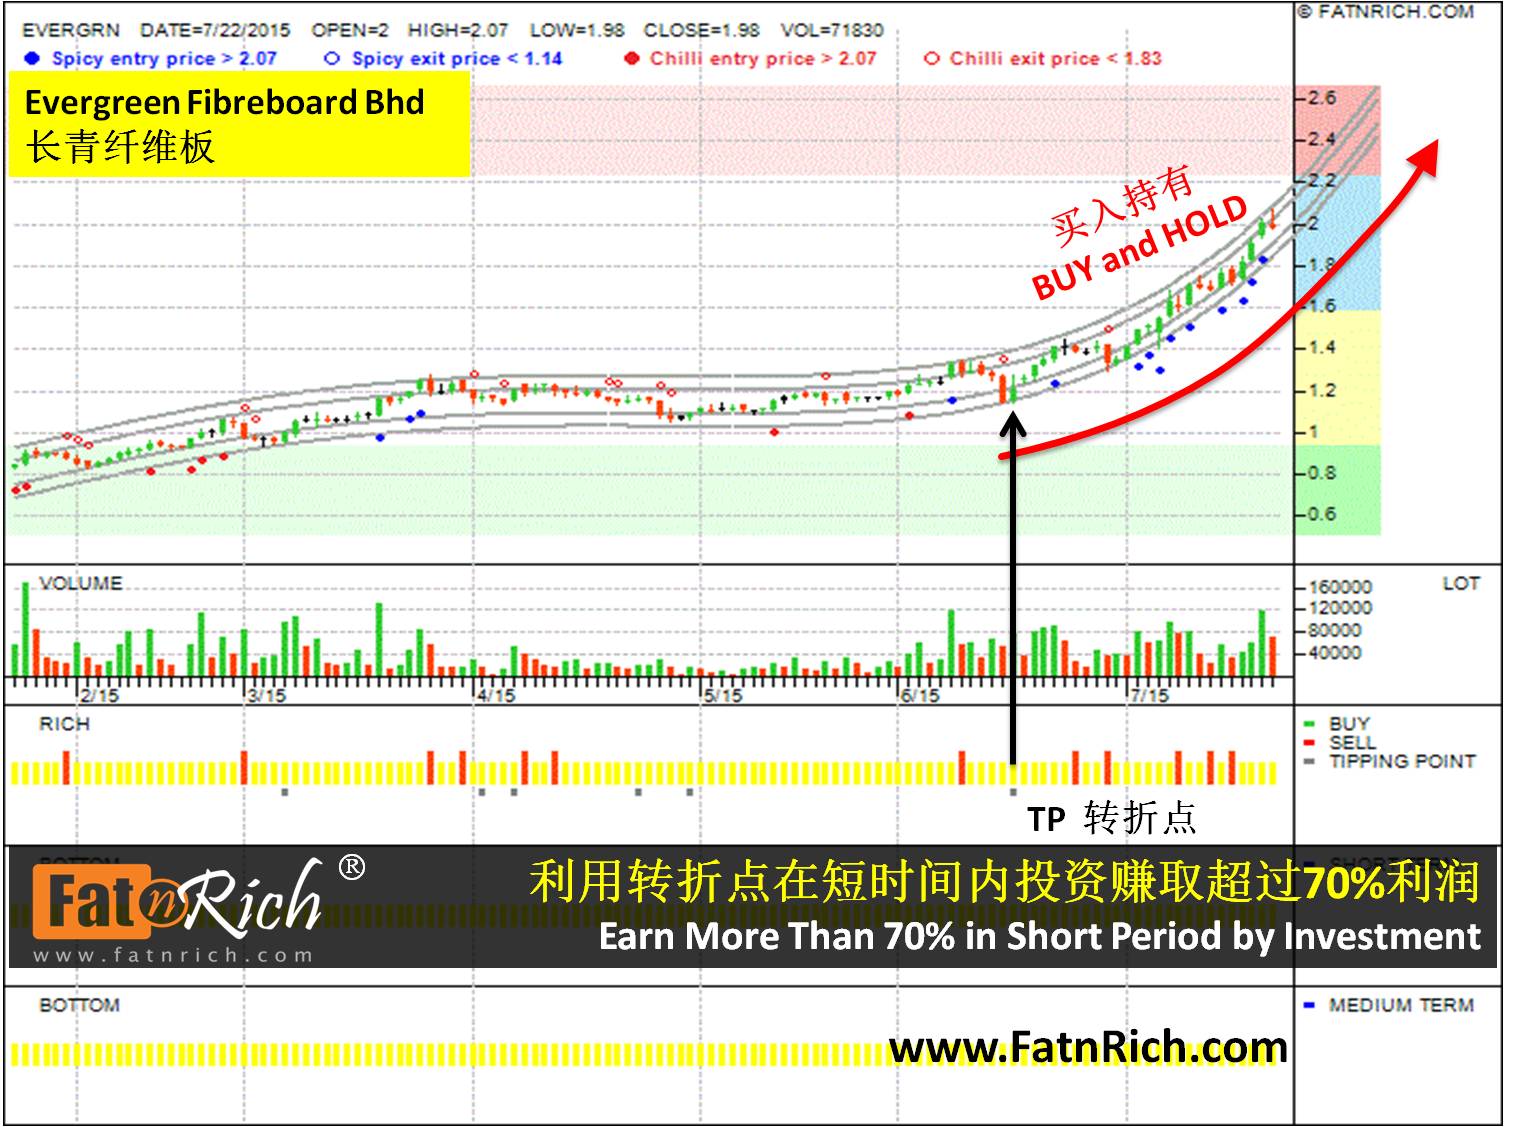 Malaysia stock : Evergreen Fibreboard Bhd EVERGRN 5101